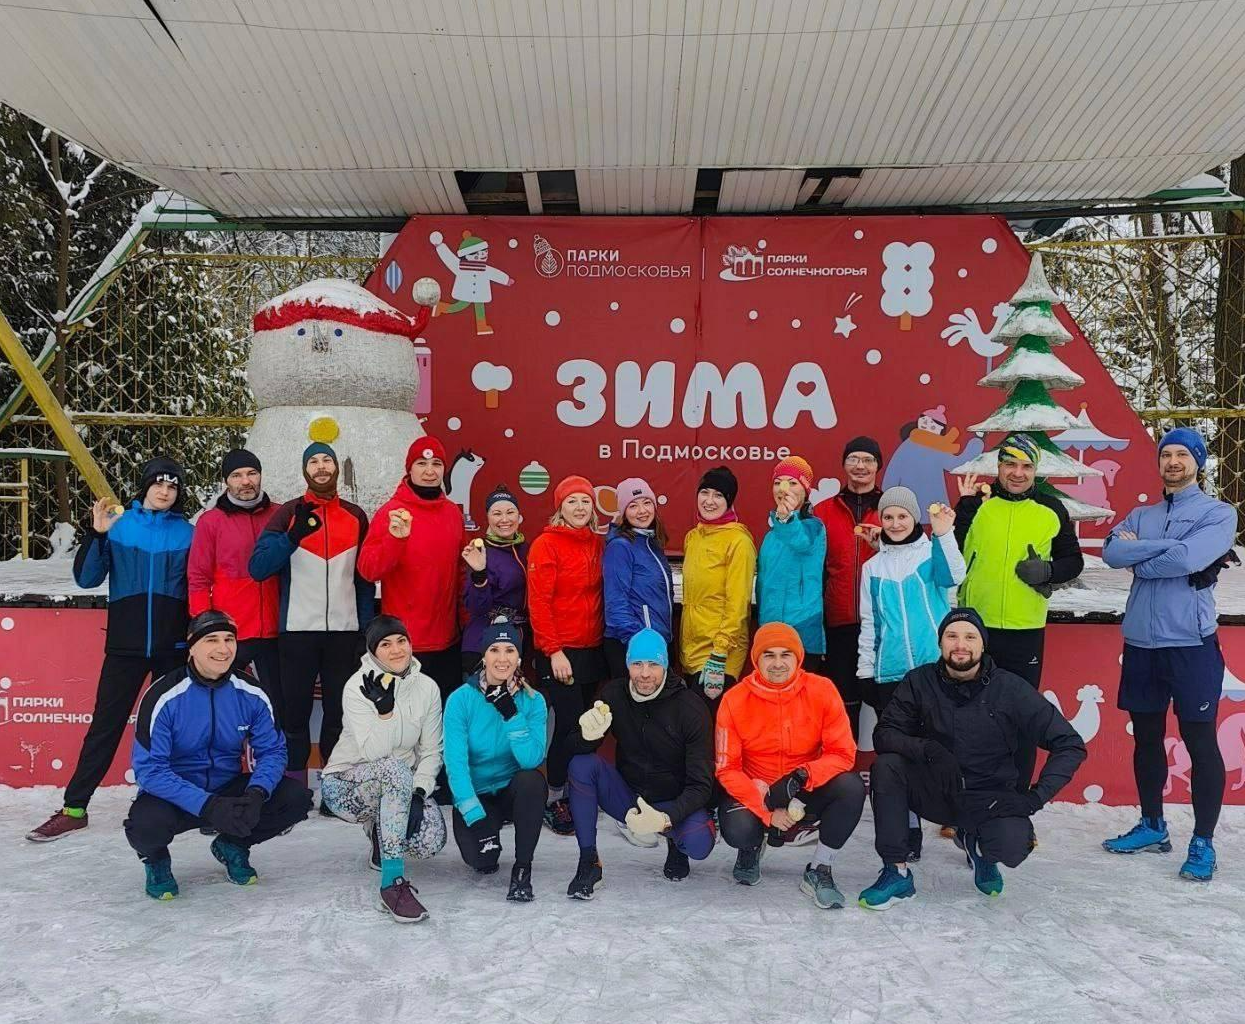 Спортсмены пробежали пятикилометровую дистанцию по живописной набережной Солнечногорска